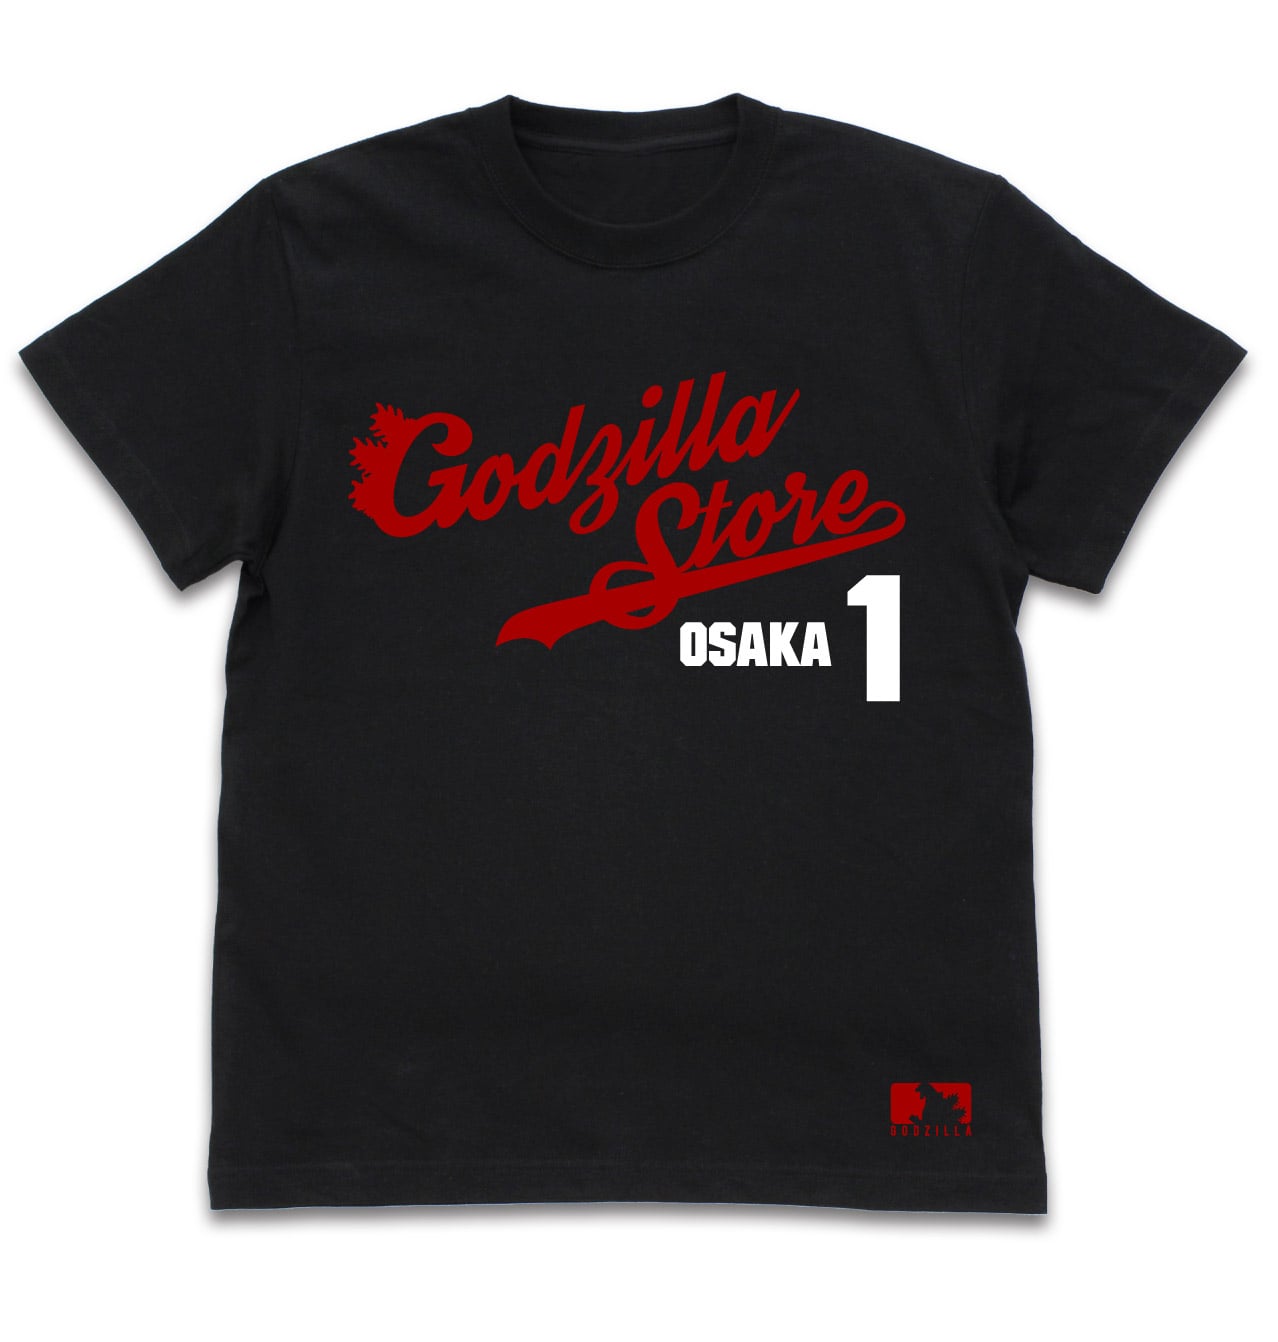 ゴジラ・ストア Osaka 1st anniversary Tシャツ